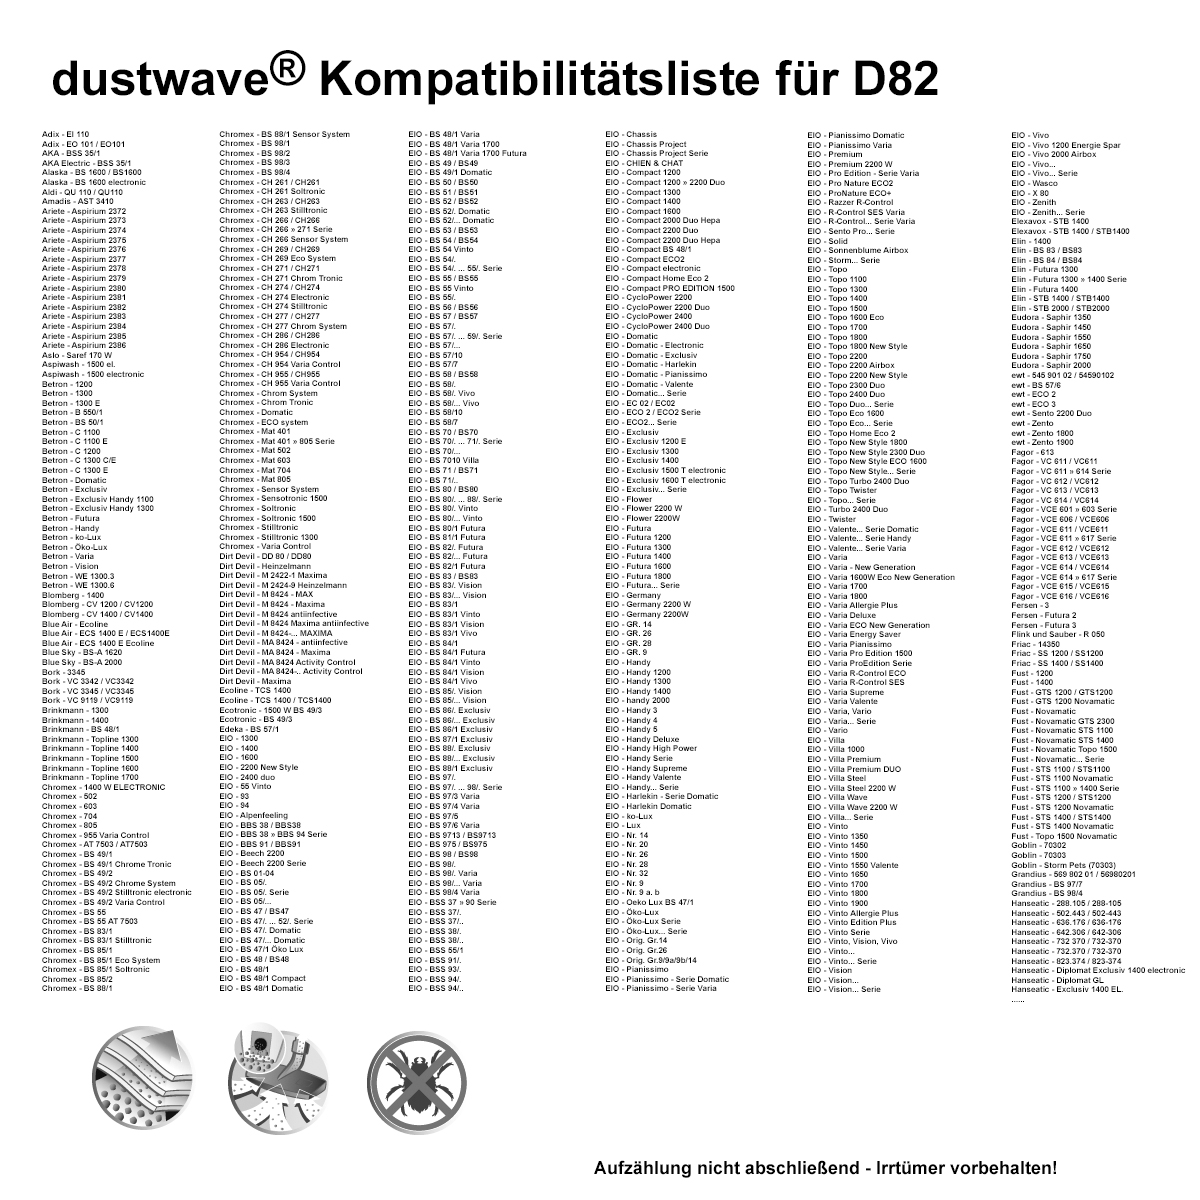 Dustwave® 1 Staubsaugerbeutel für Alaska BS 1600 electronic - hocheffizient, mehrlagiges Mikrovlies mit Hygieneverschluss - Made in Germany